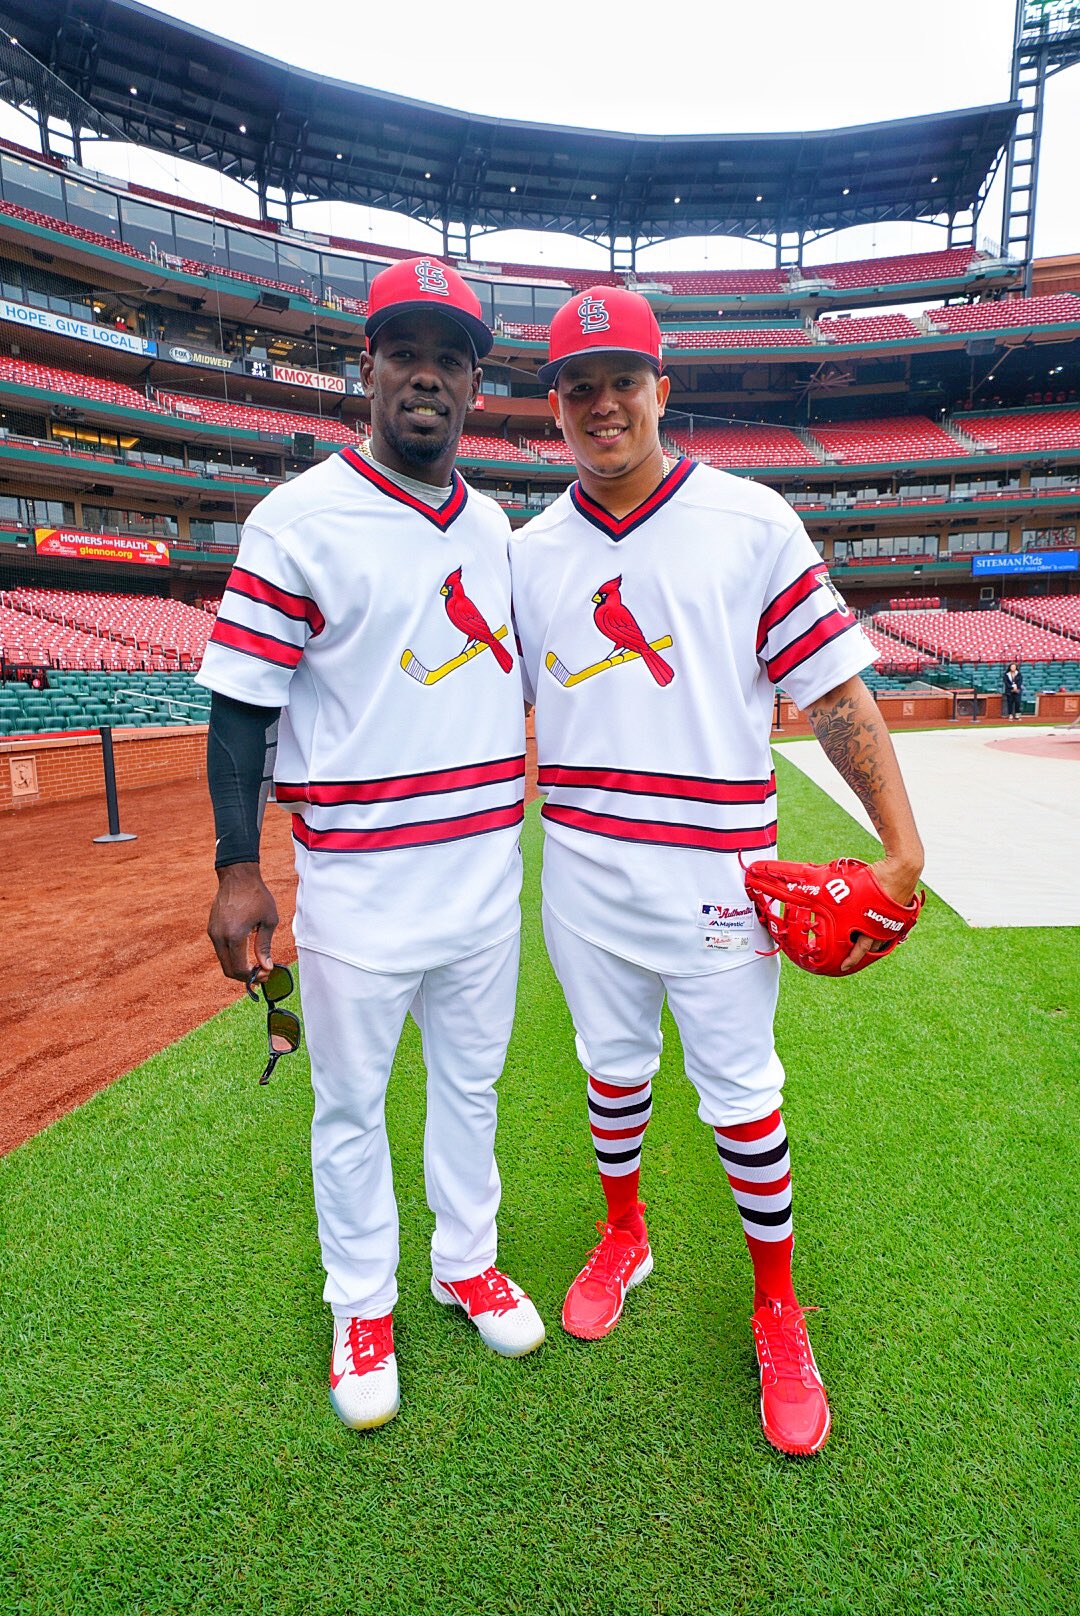 cardinals batting practice jersey